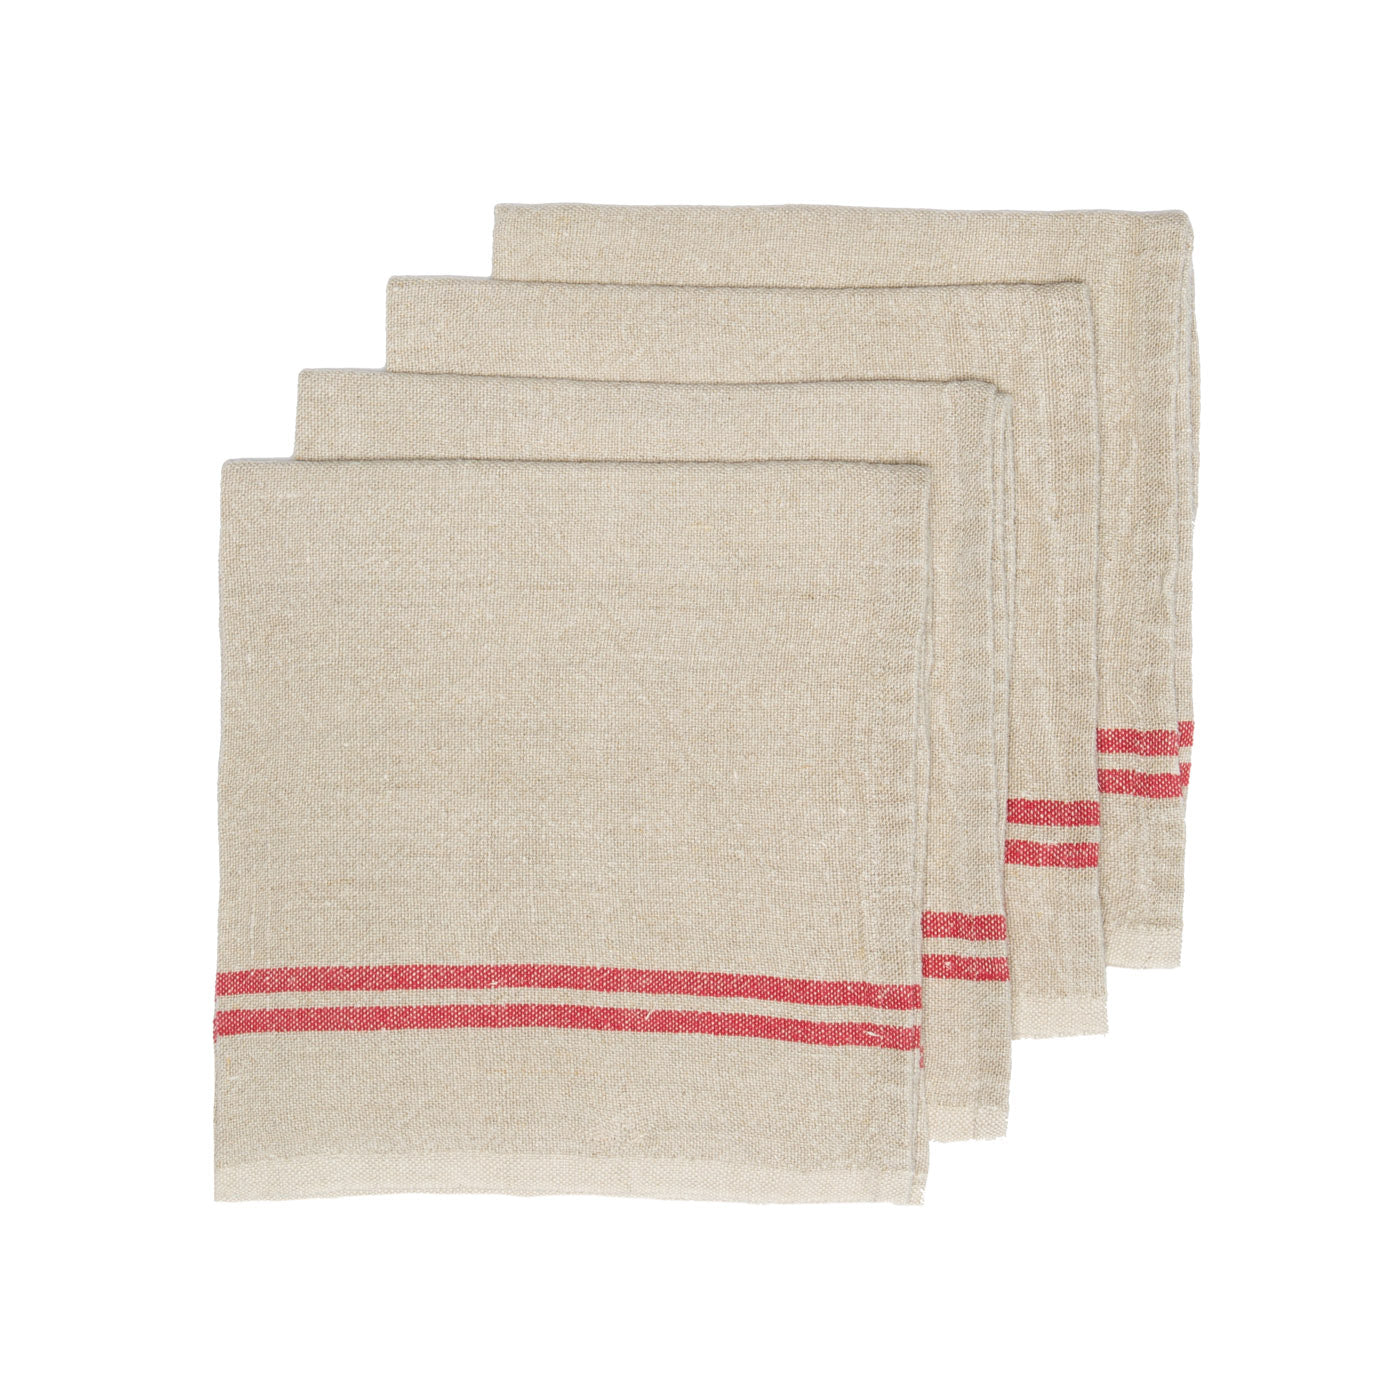 Vintage Linen Napkins Natural & Red, Set of 4